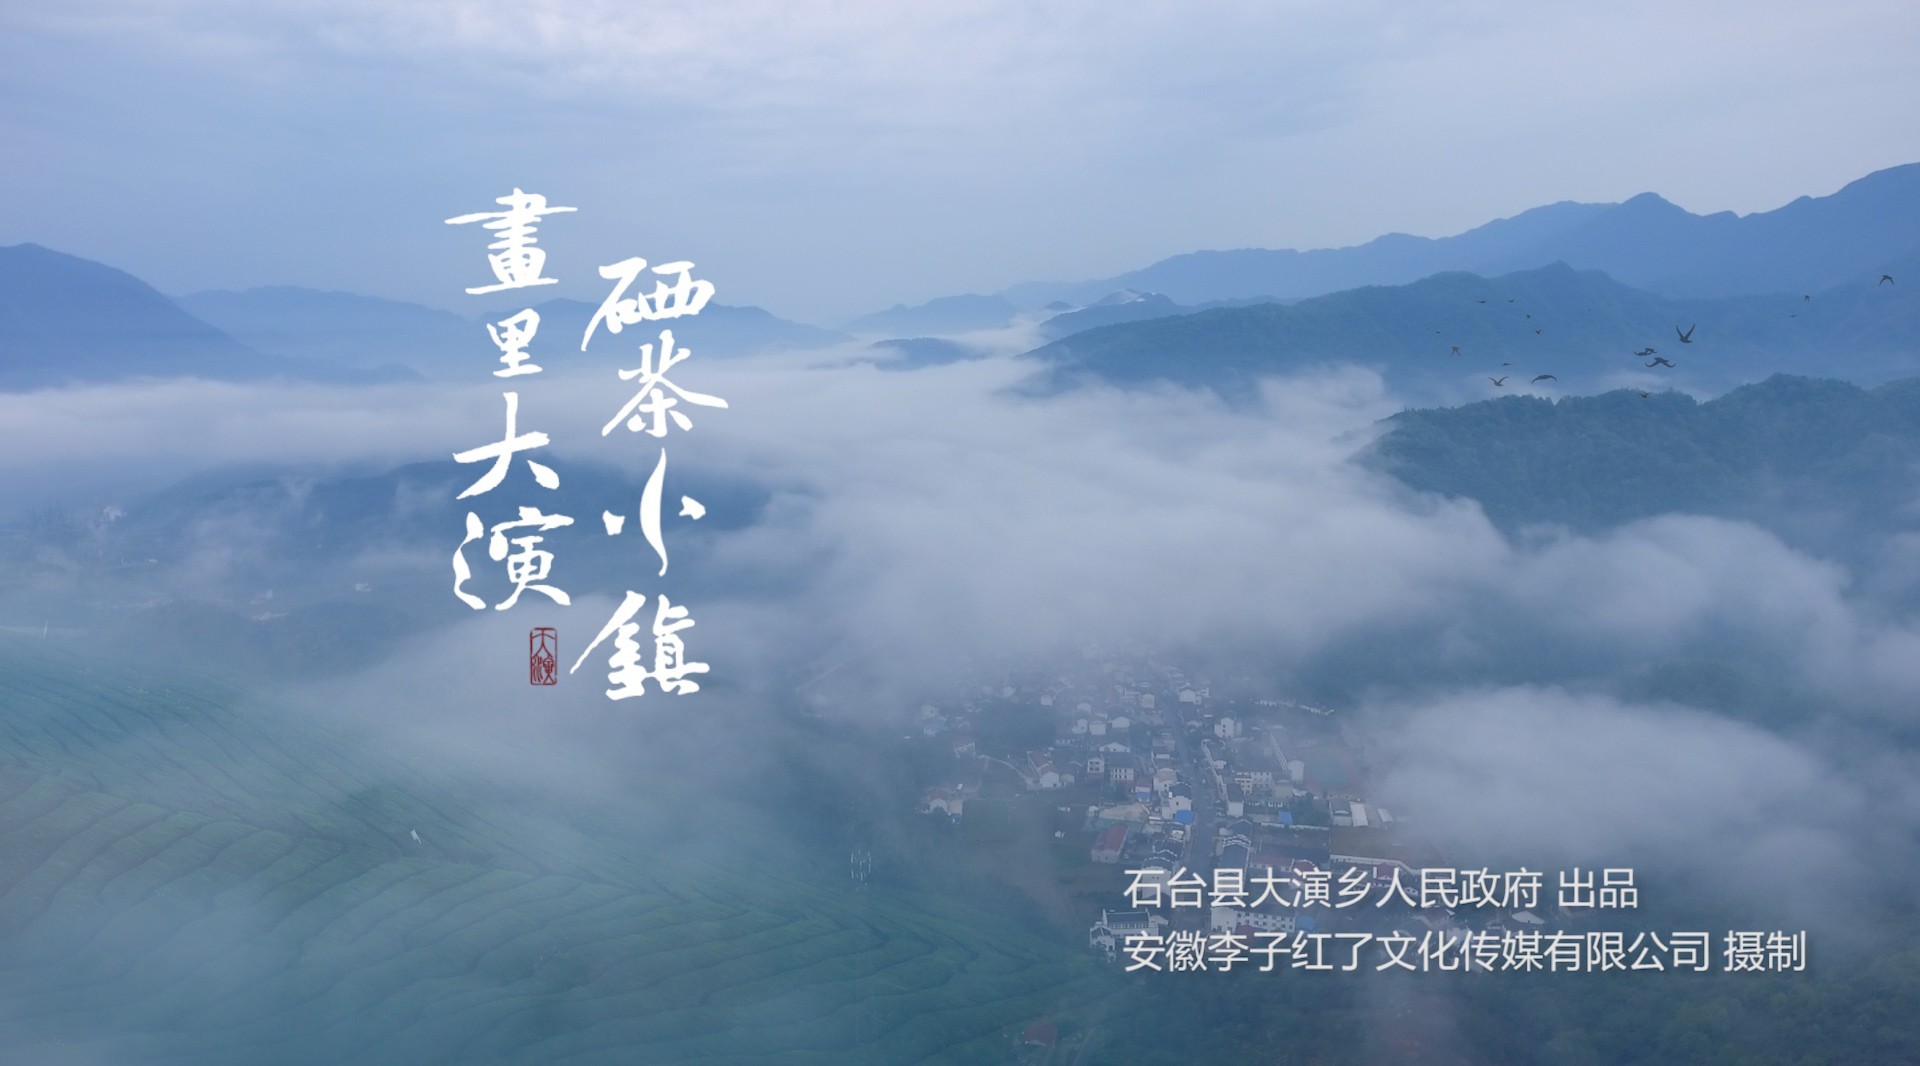 《硒茶小镇 画里大演》- 石台县大演乡2020年旅游宣传片